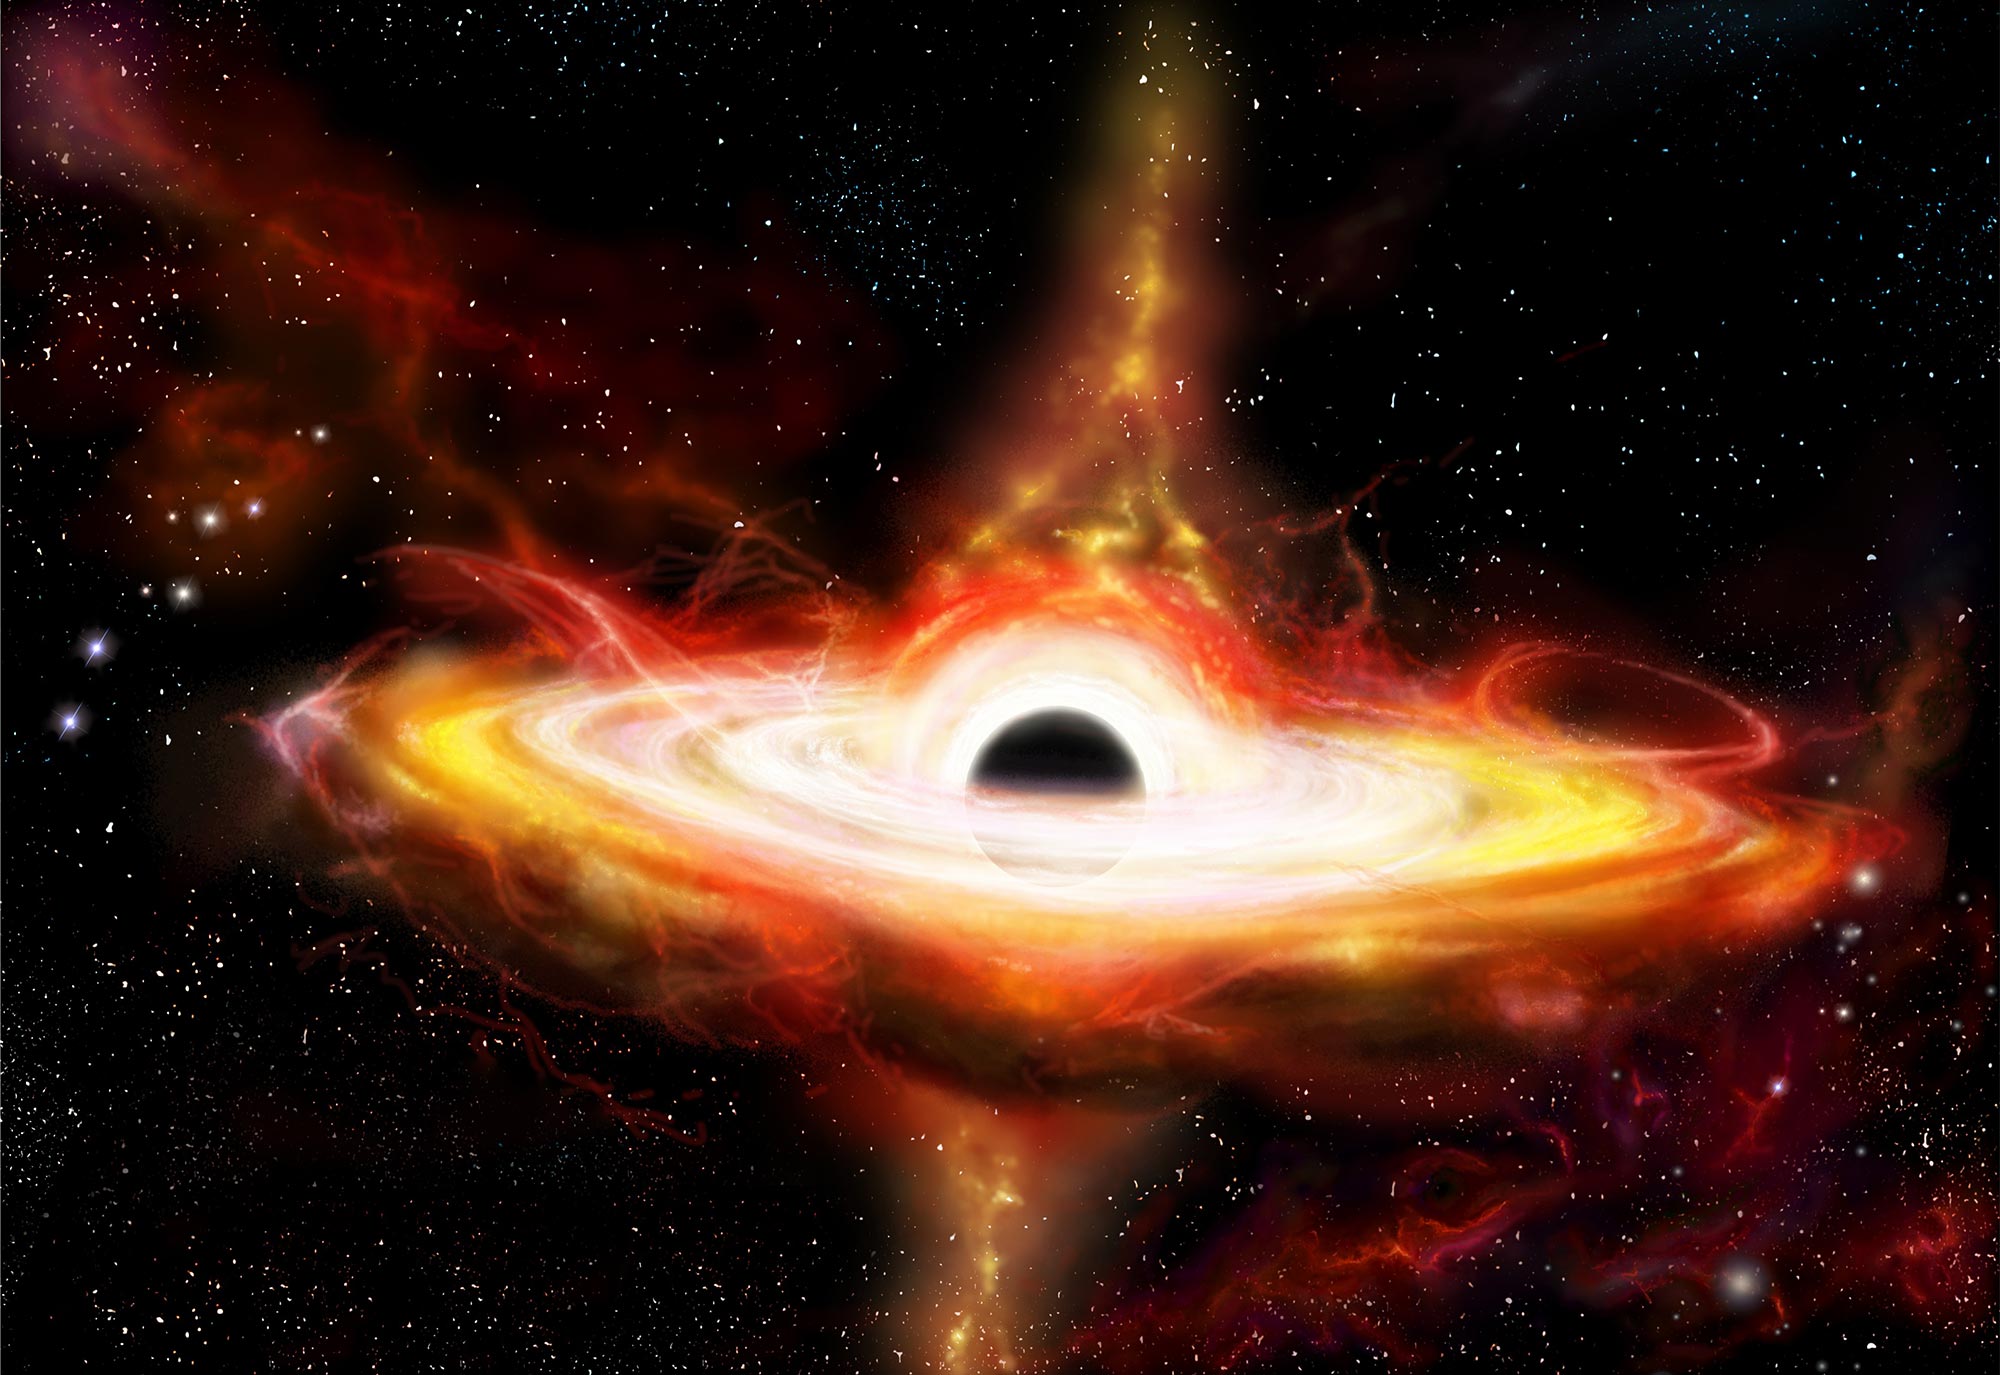 Teleskop James Webb menguraikan lubang hitam di alam semesta awal